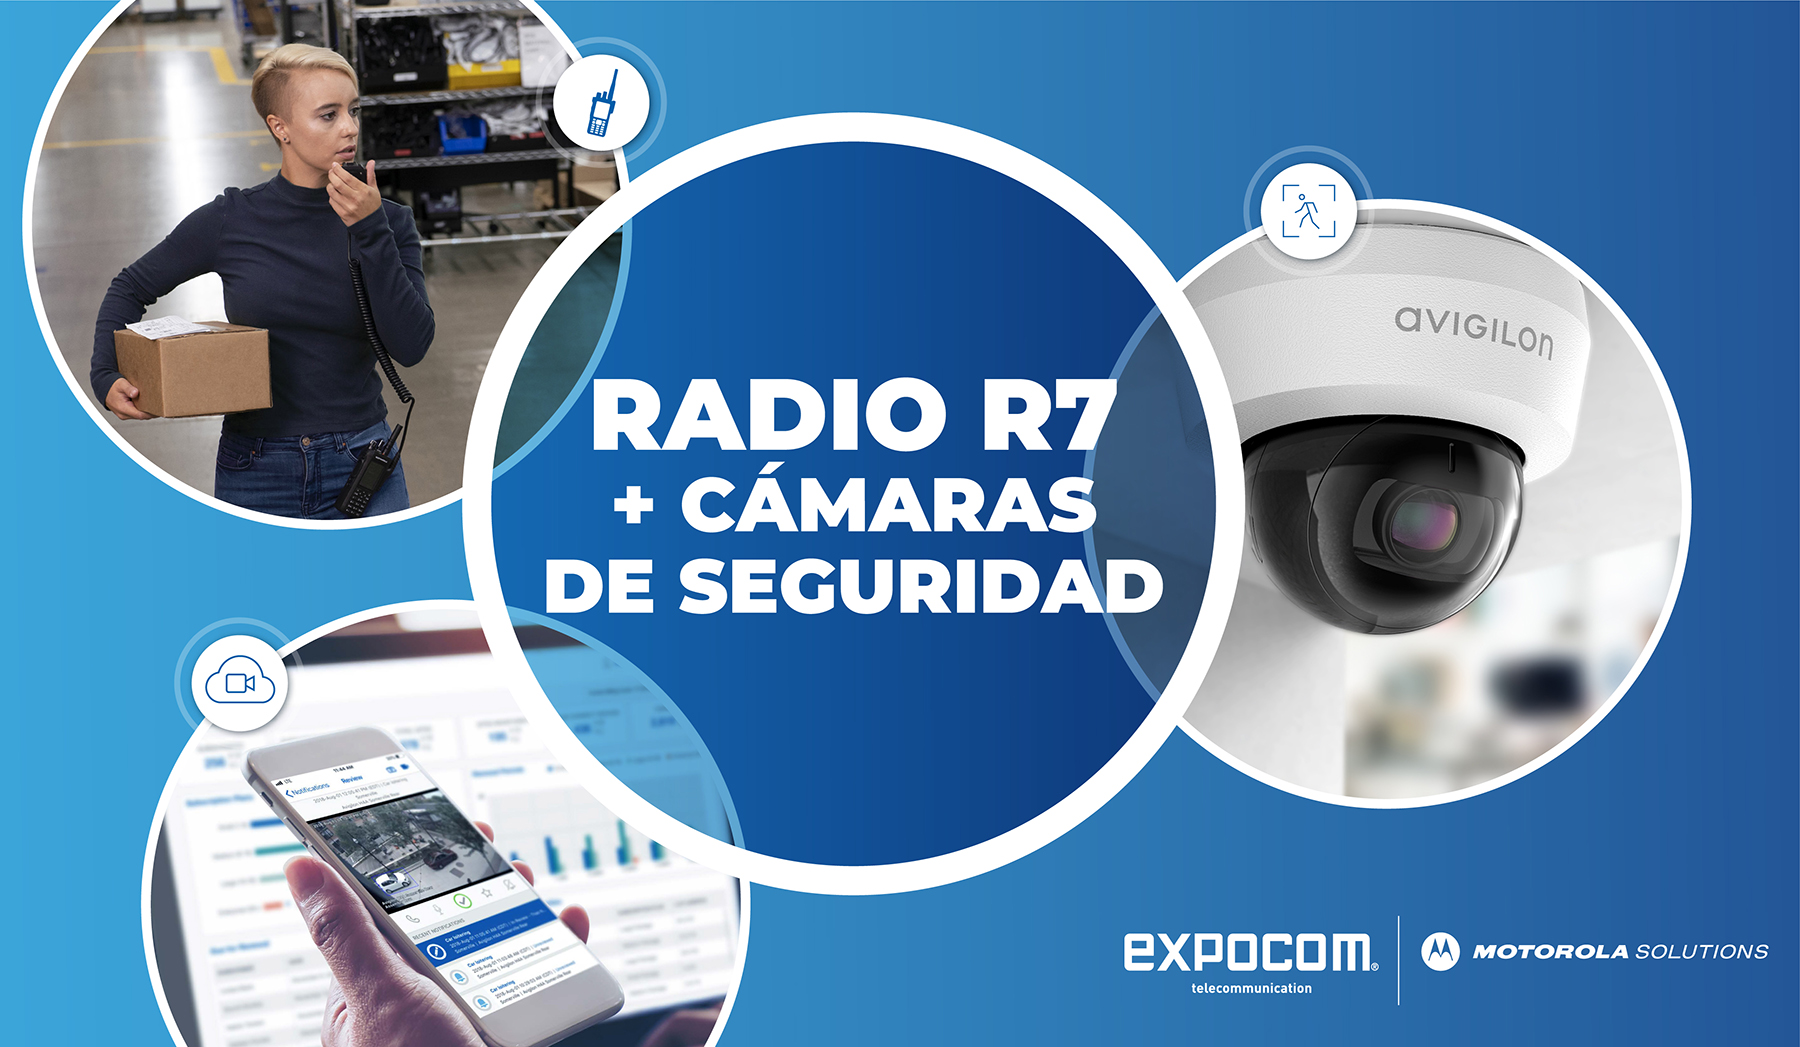 RADIO R7 + CÁMARAS DE SEGURIDAD